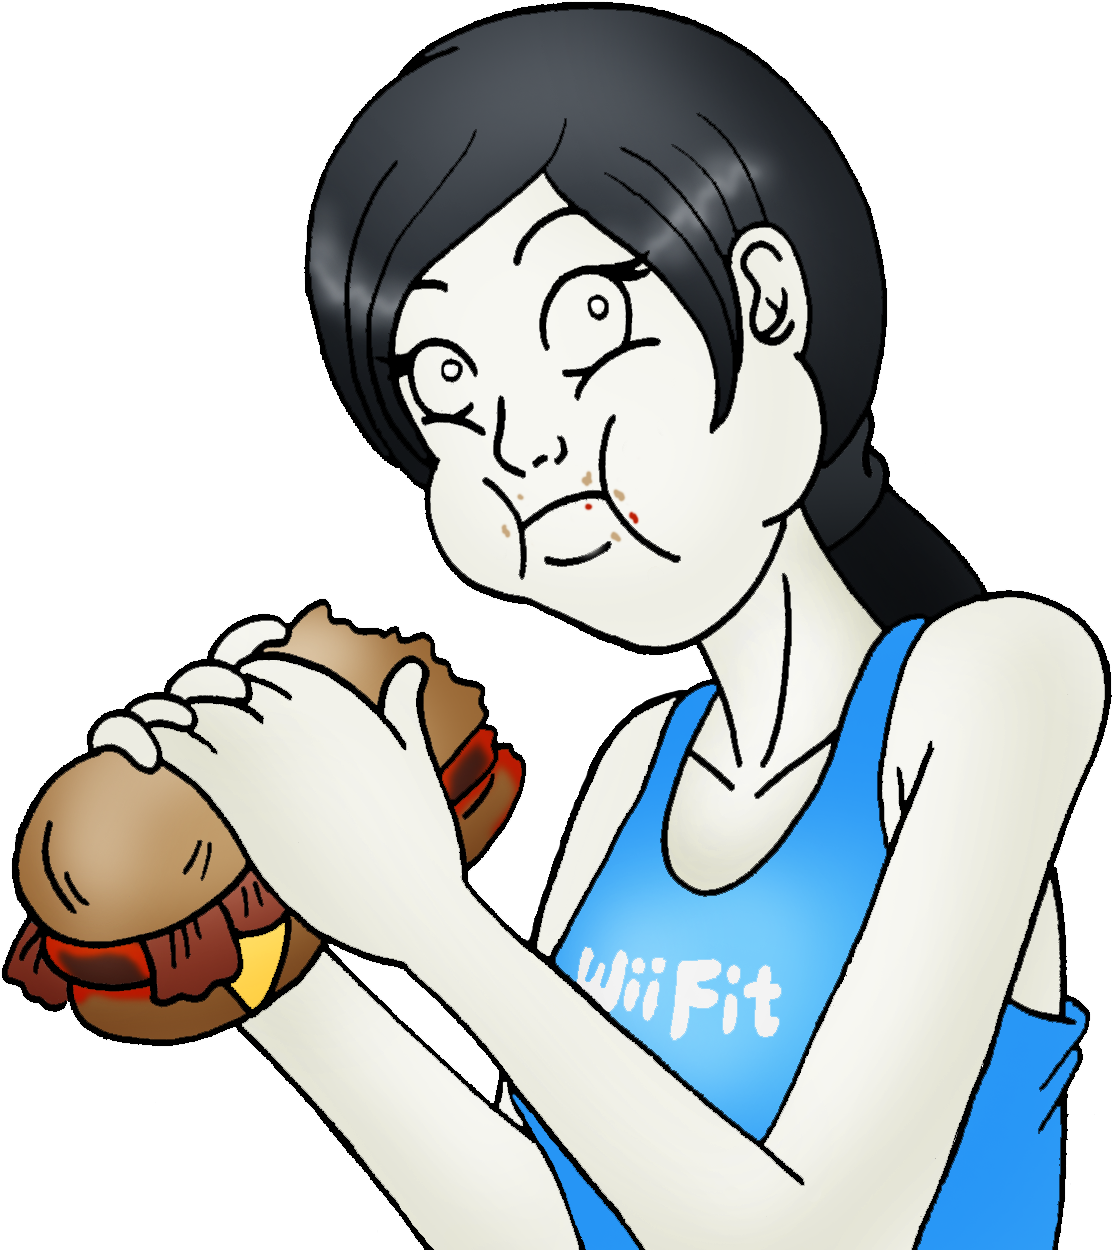 Krystal Can't Enjoy Her Sandwich - Wii Fit Trainer Sandwich (1876x1295)